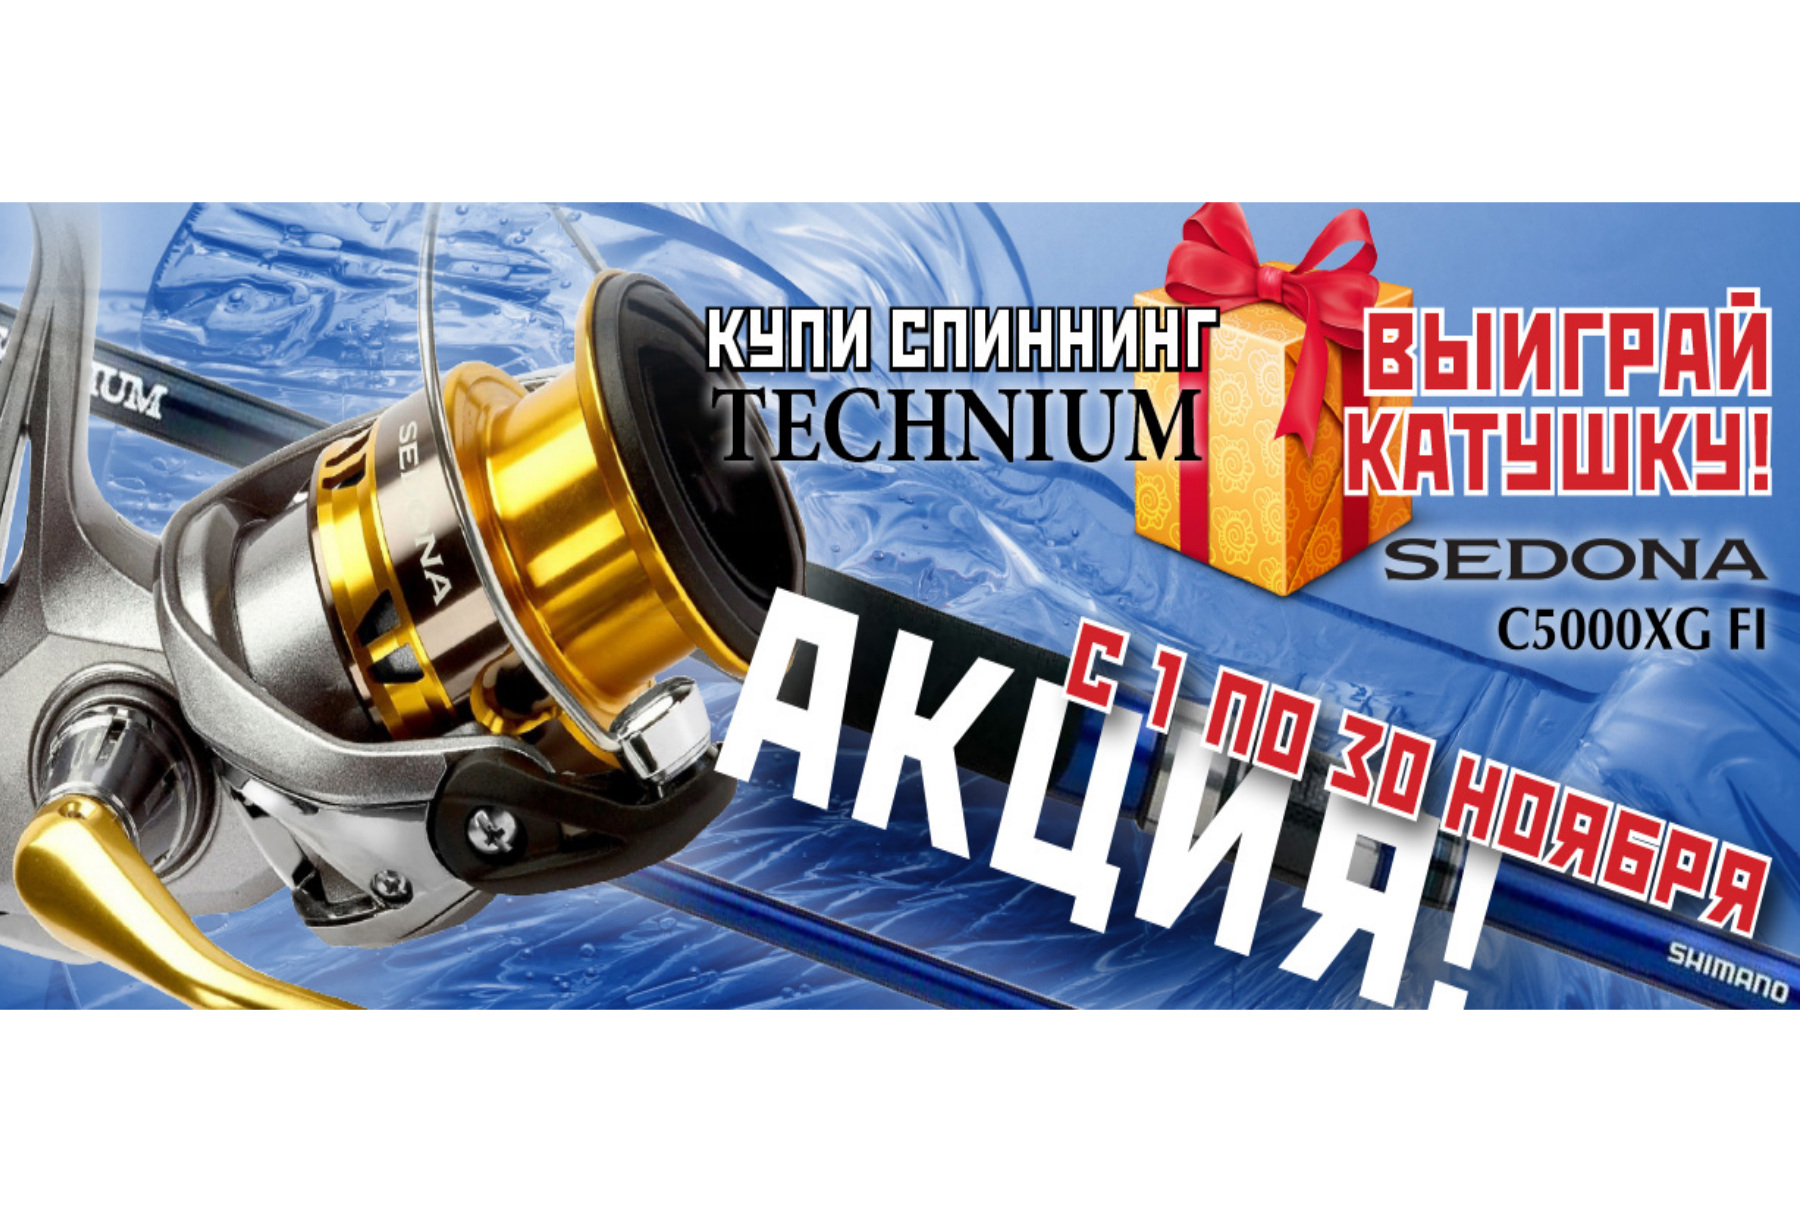 Купи спиннинг technium – выиграй катушку Shimano Sedona!